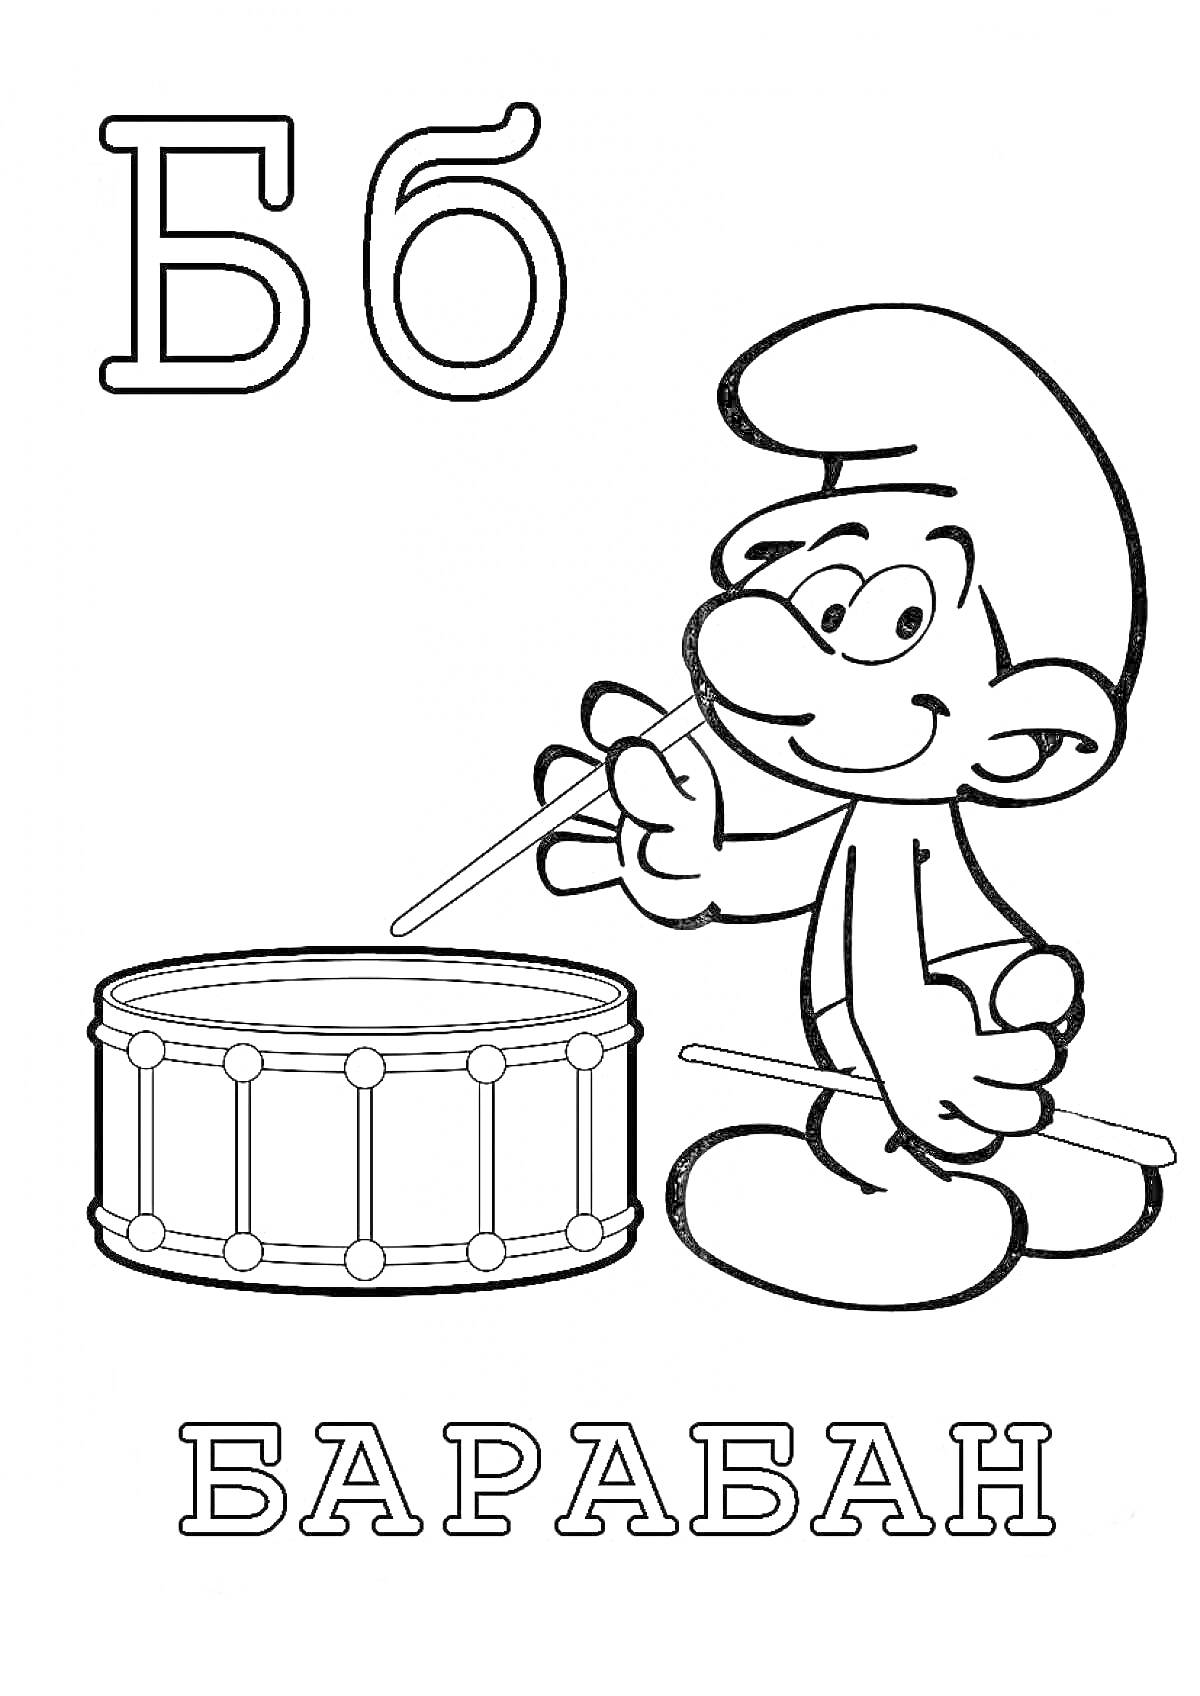 Раскраска Буква Б, персонаж и барабан